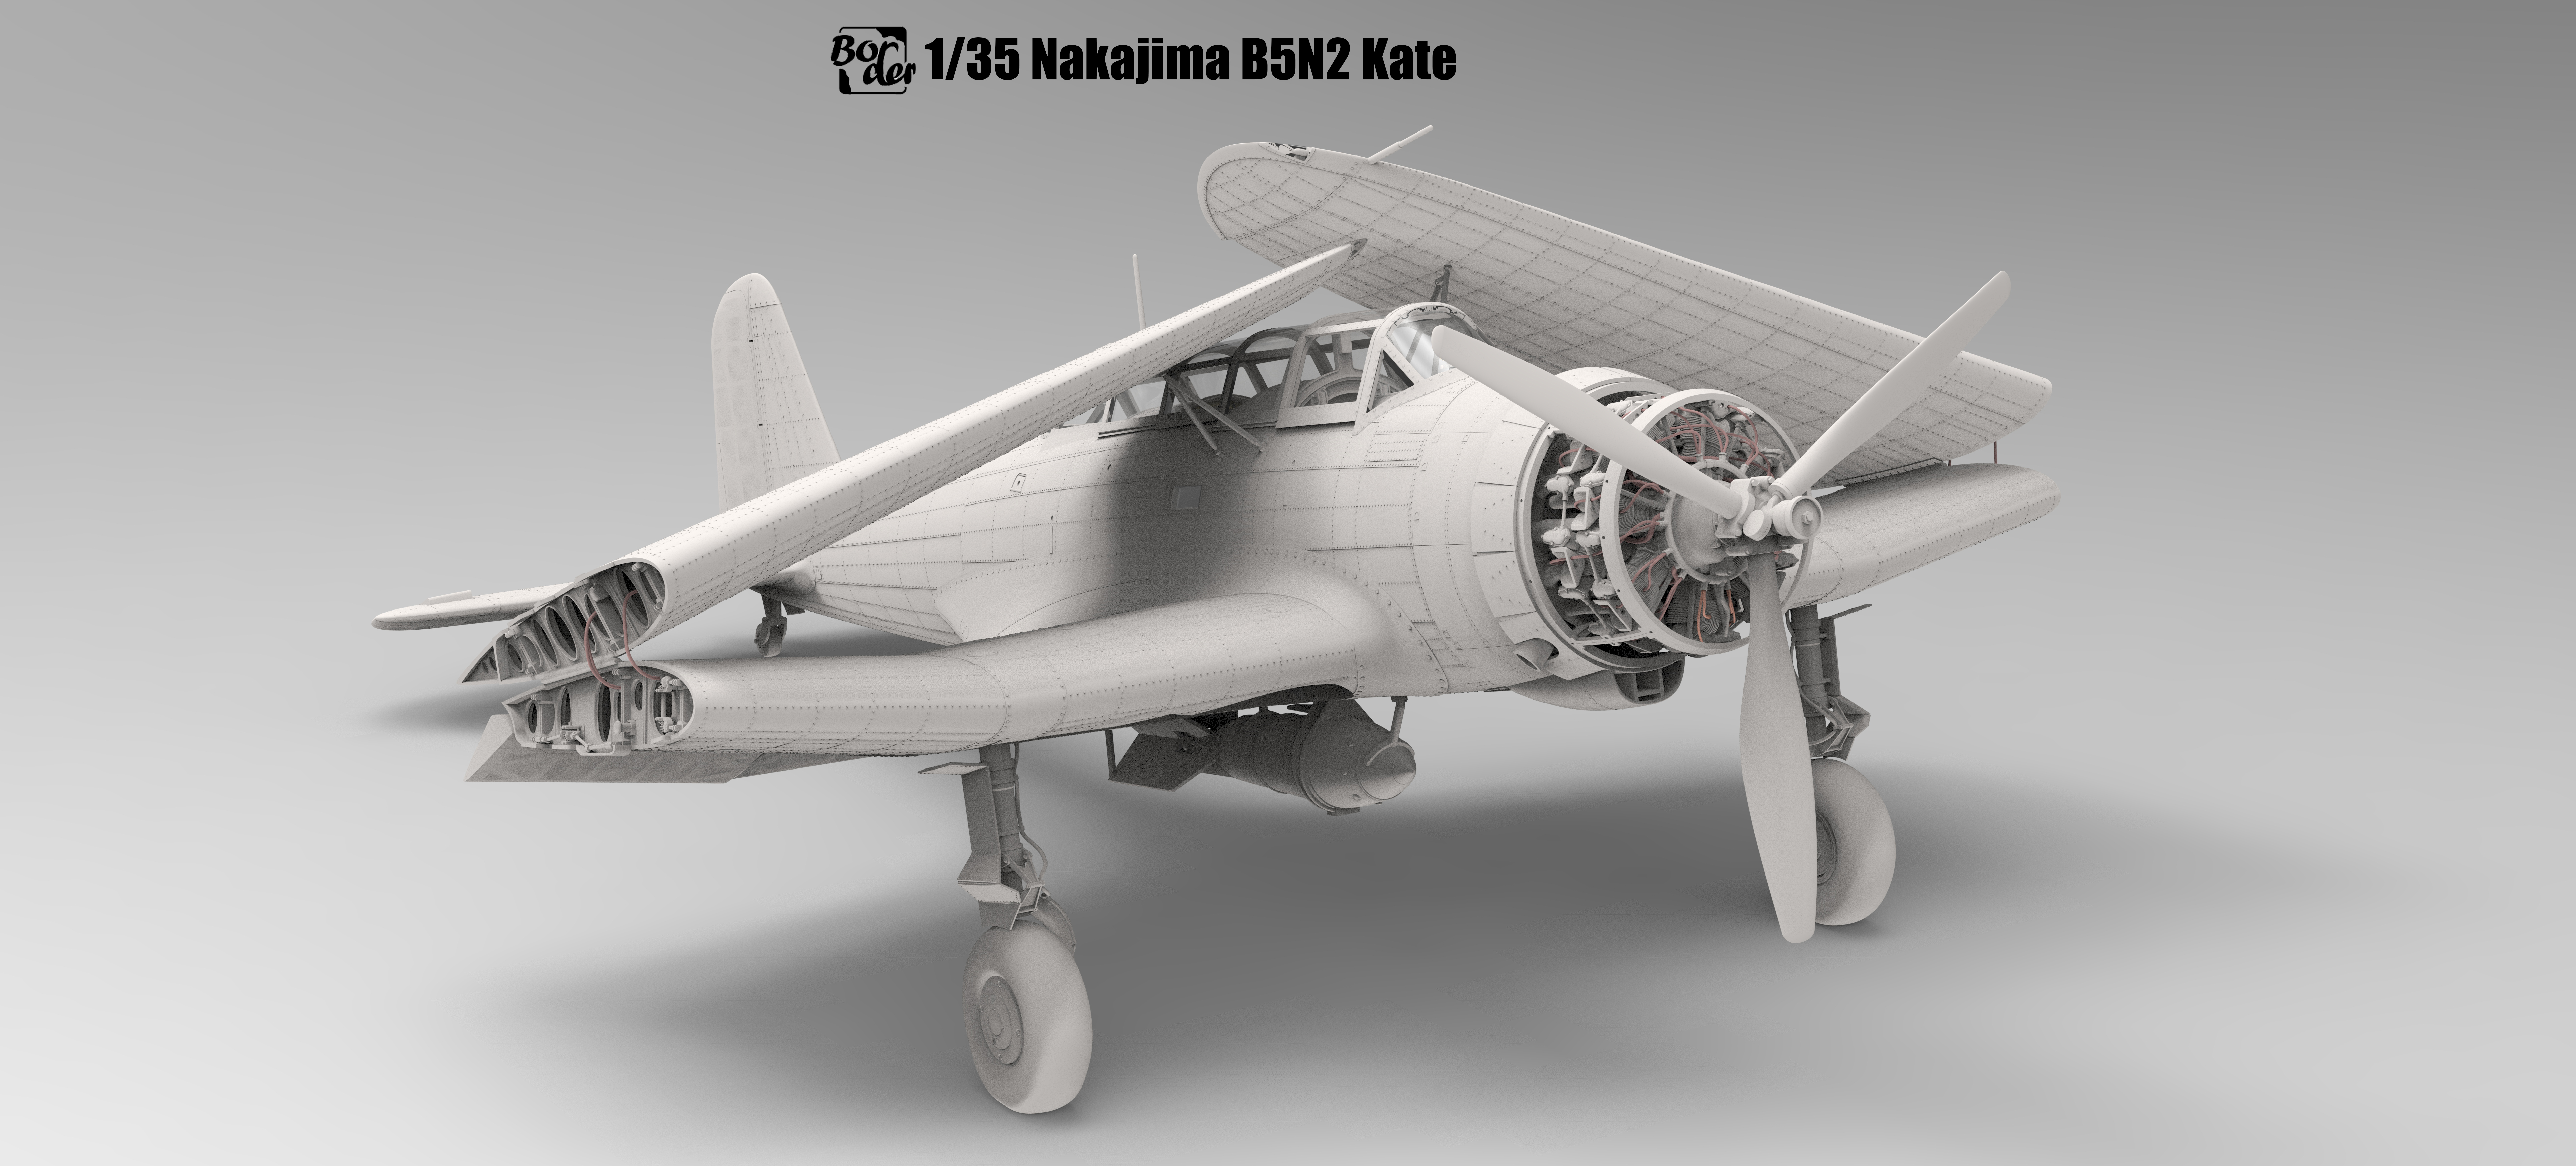 Nakajima B5N2 Type 97 Carrier Attack Bomber "Kate"